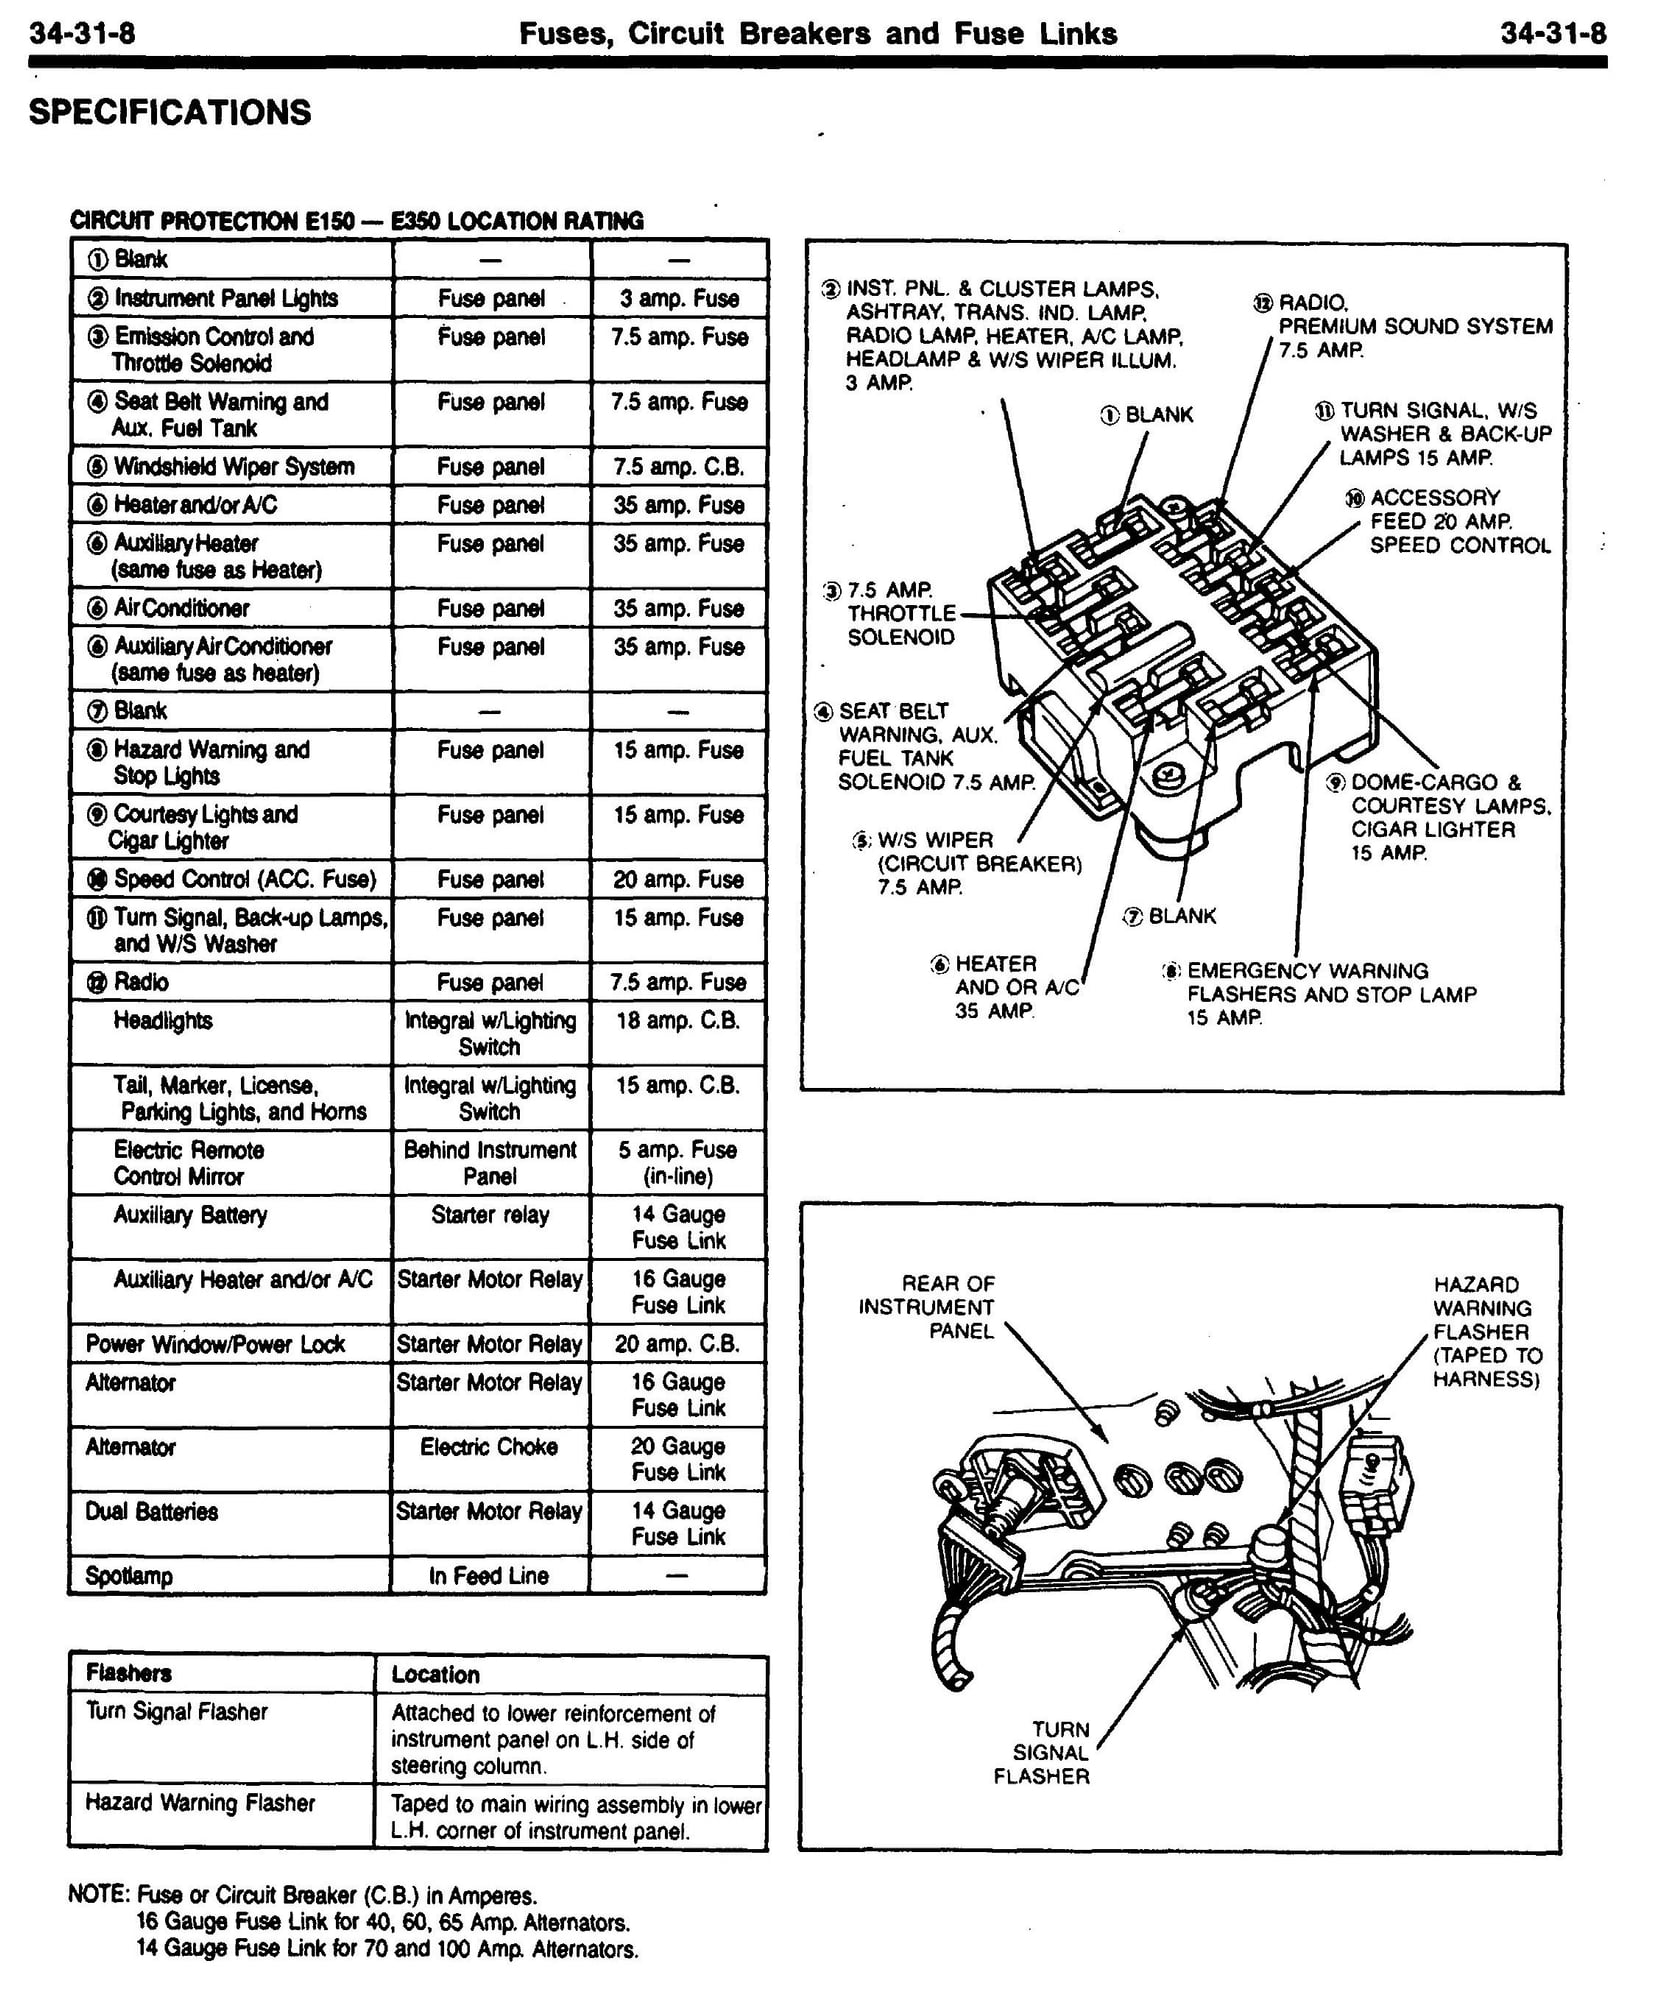 1987 E-350 Econoline fuse box diagram? - Page 2 - Ford Truck ...